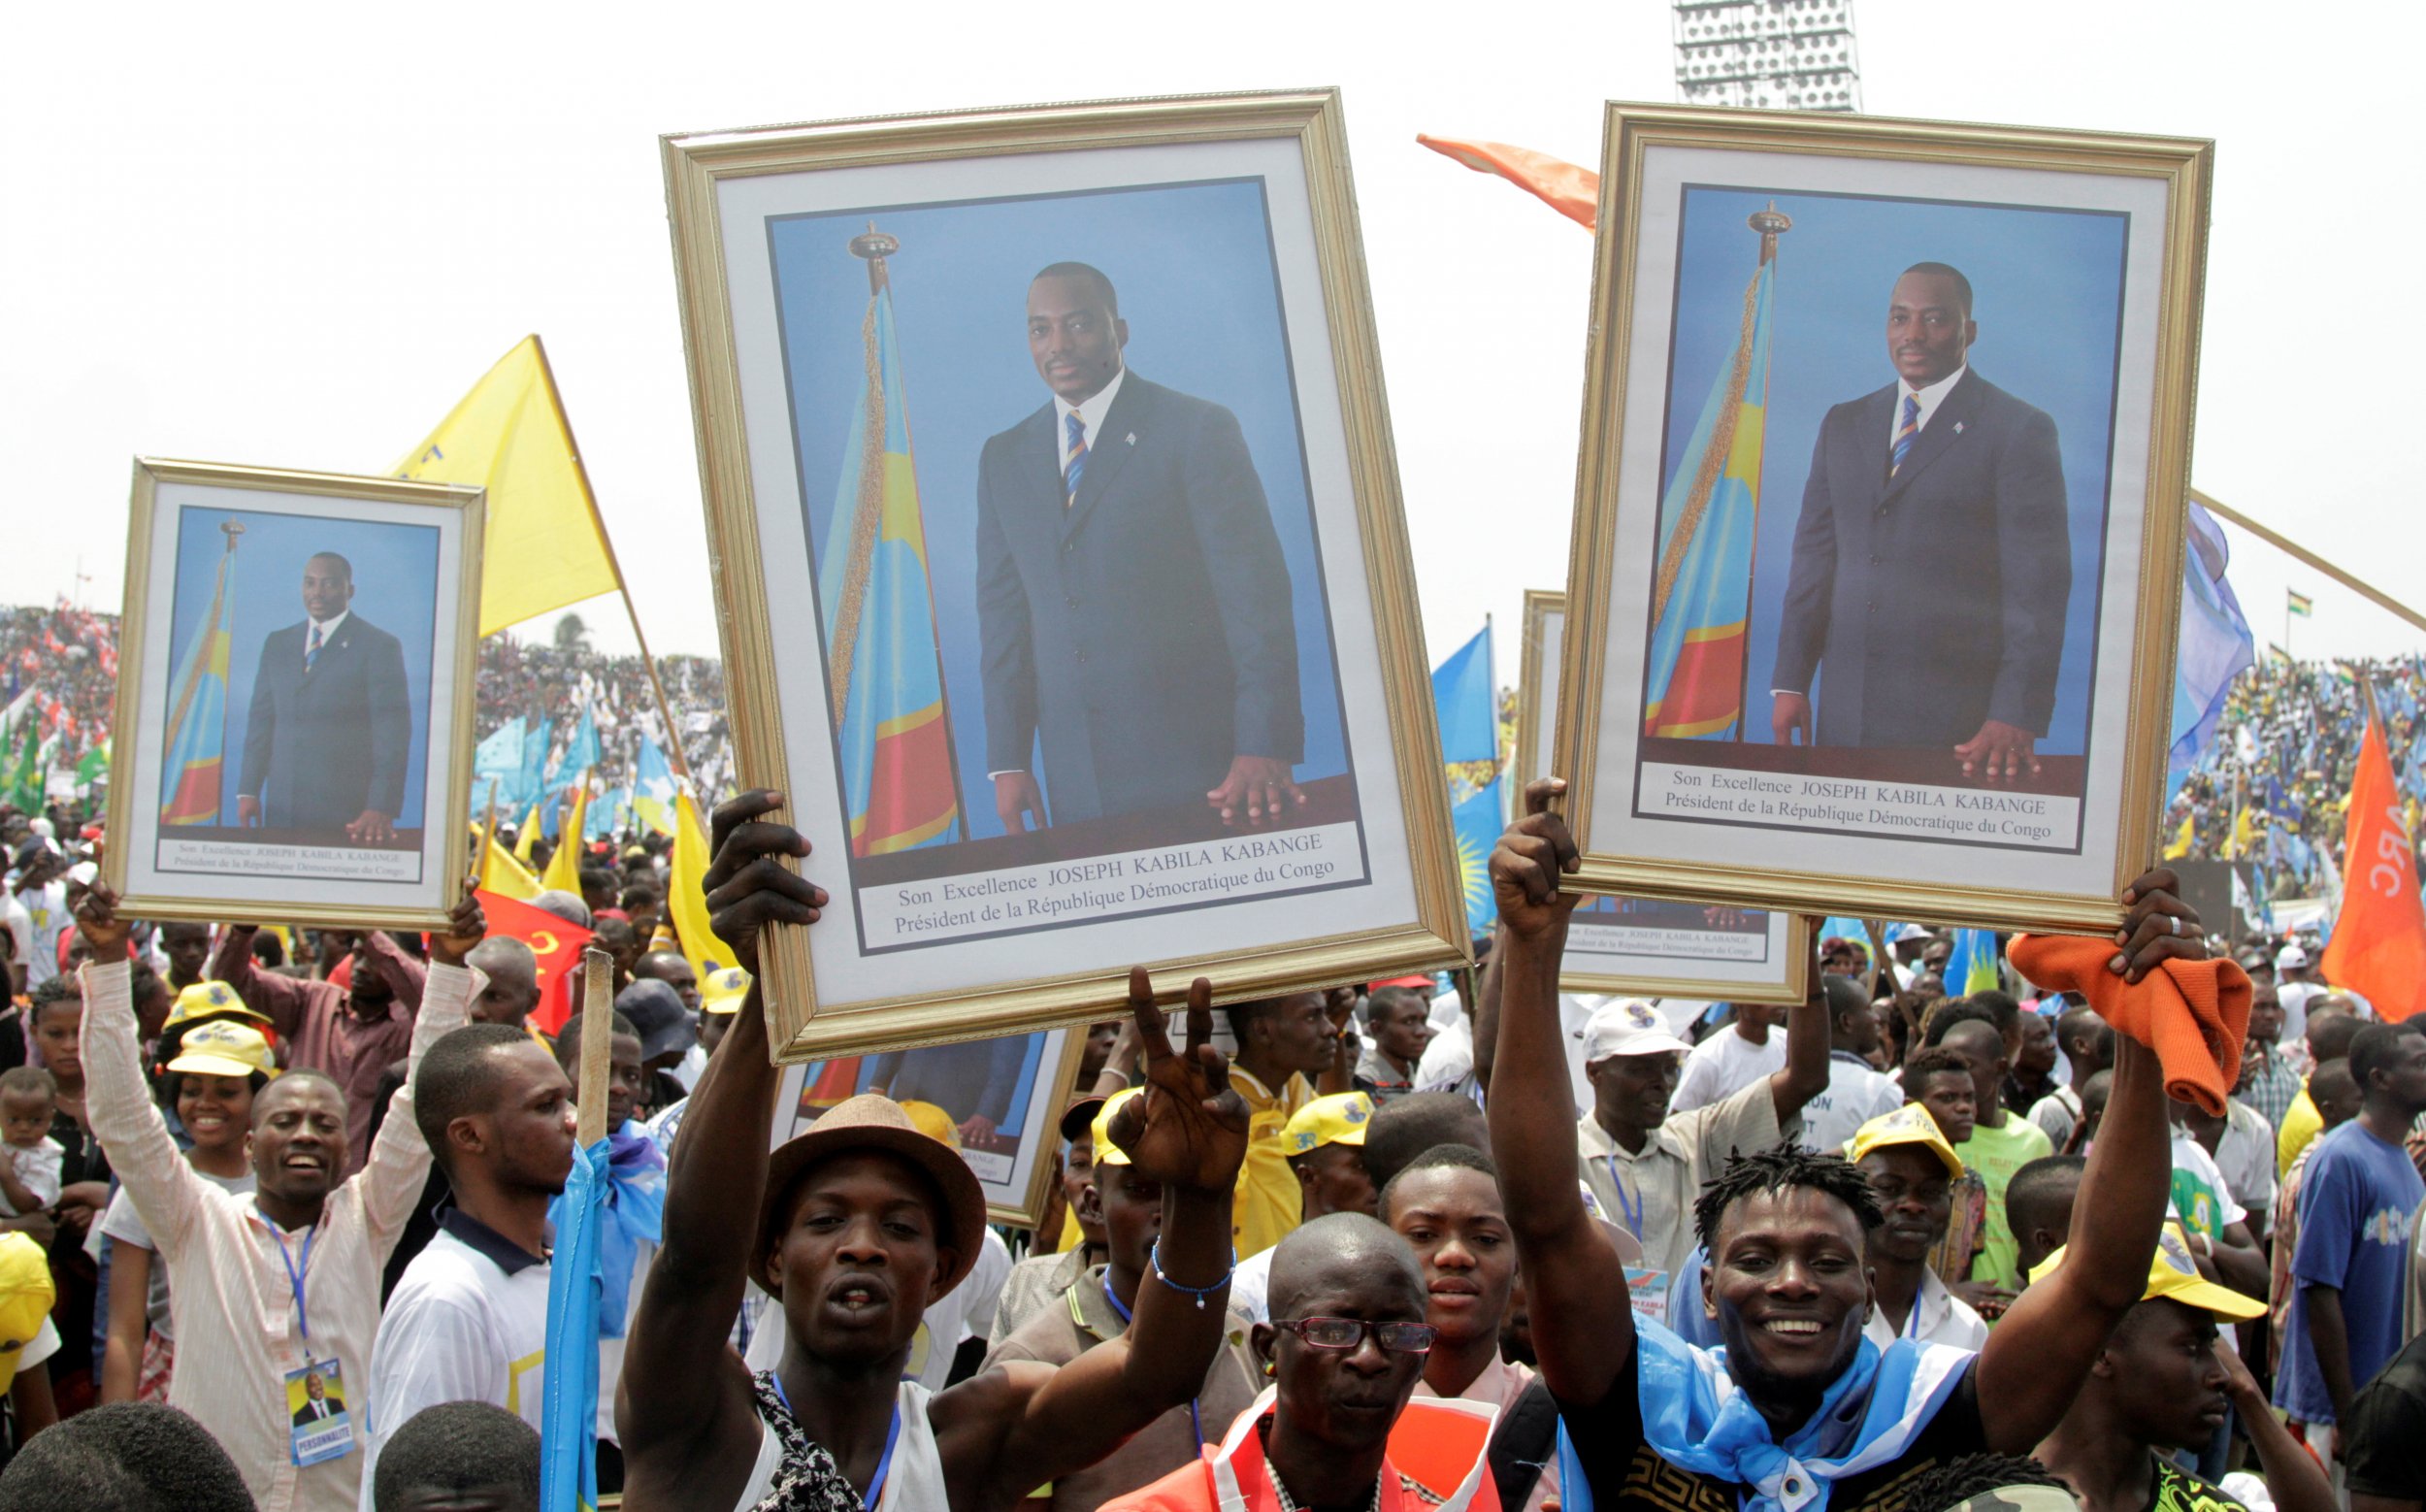 Joseph Kabila rally